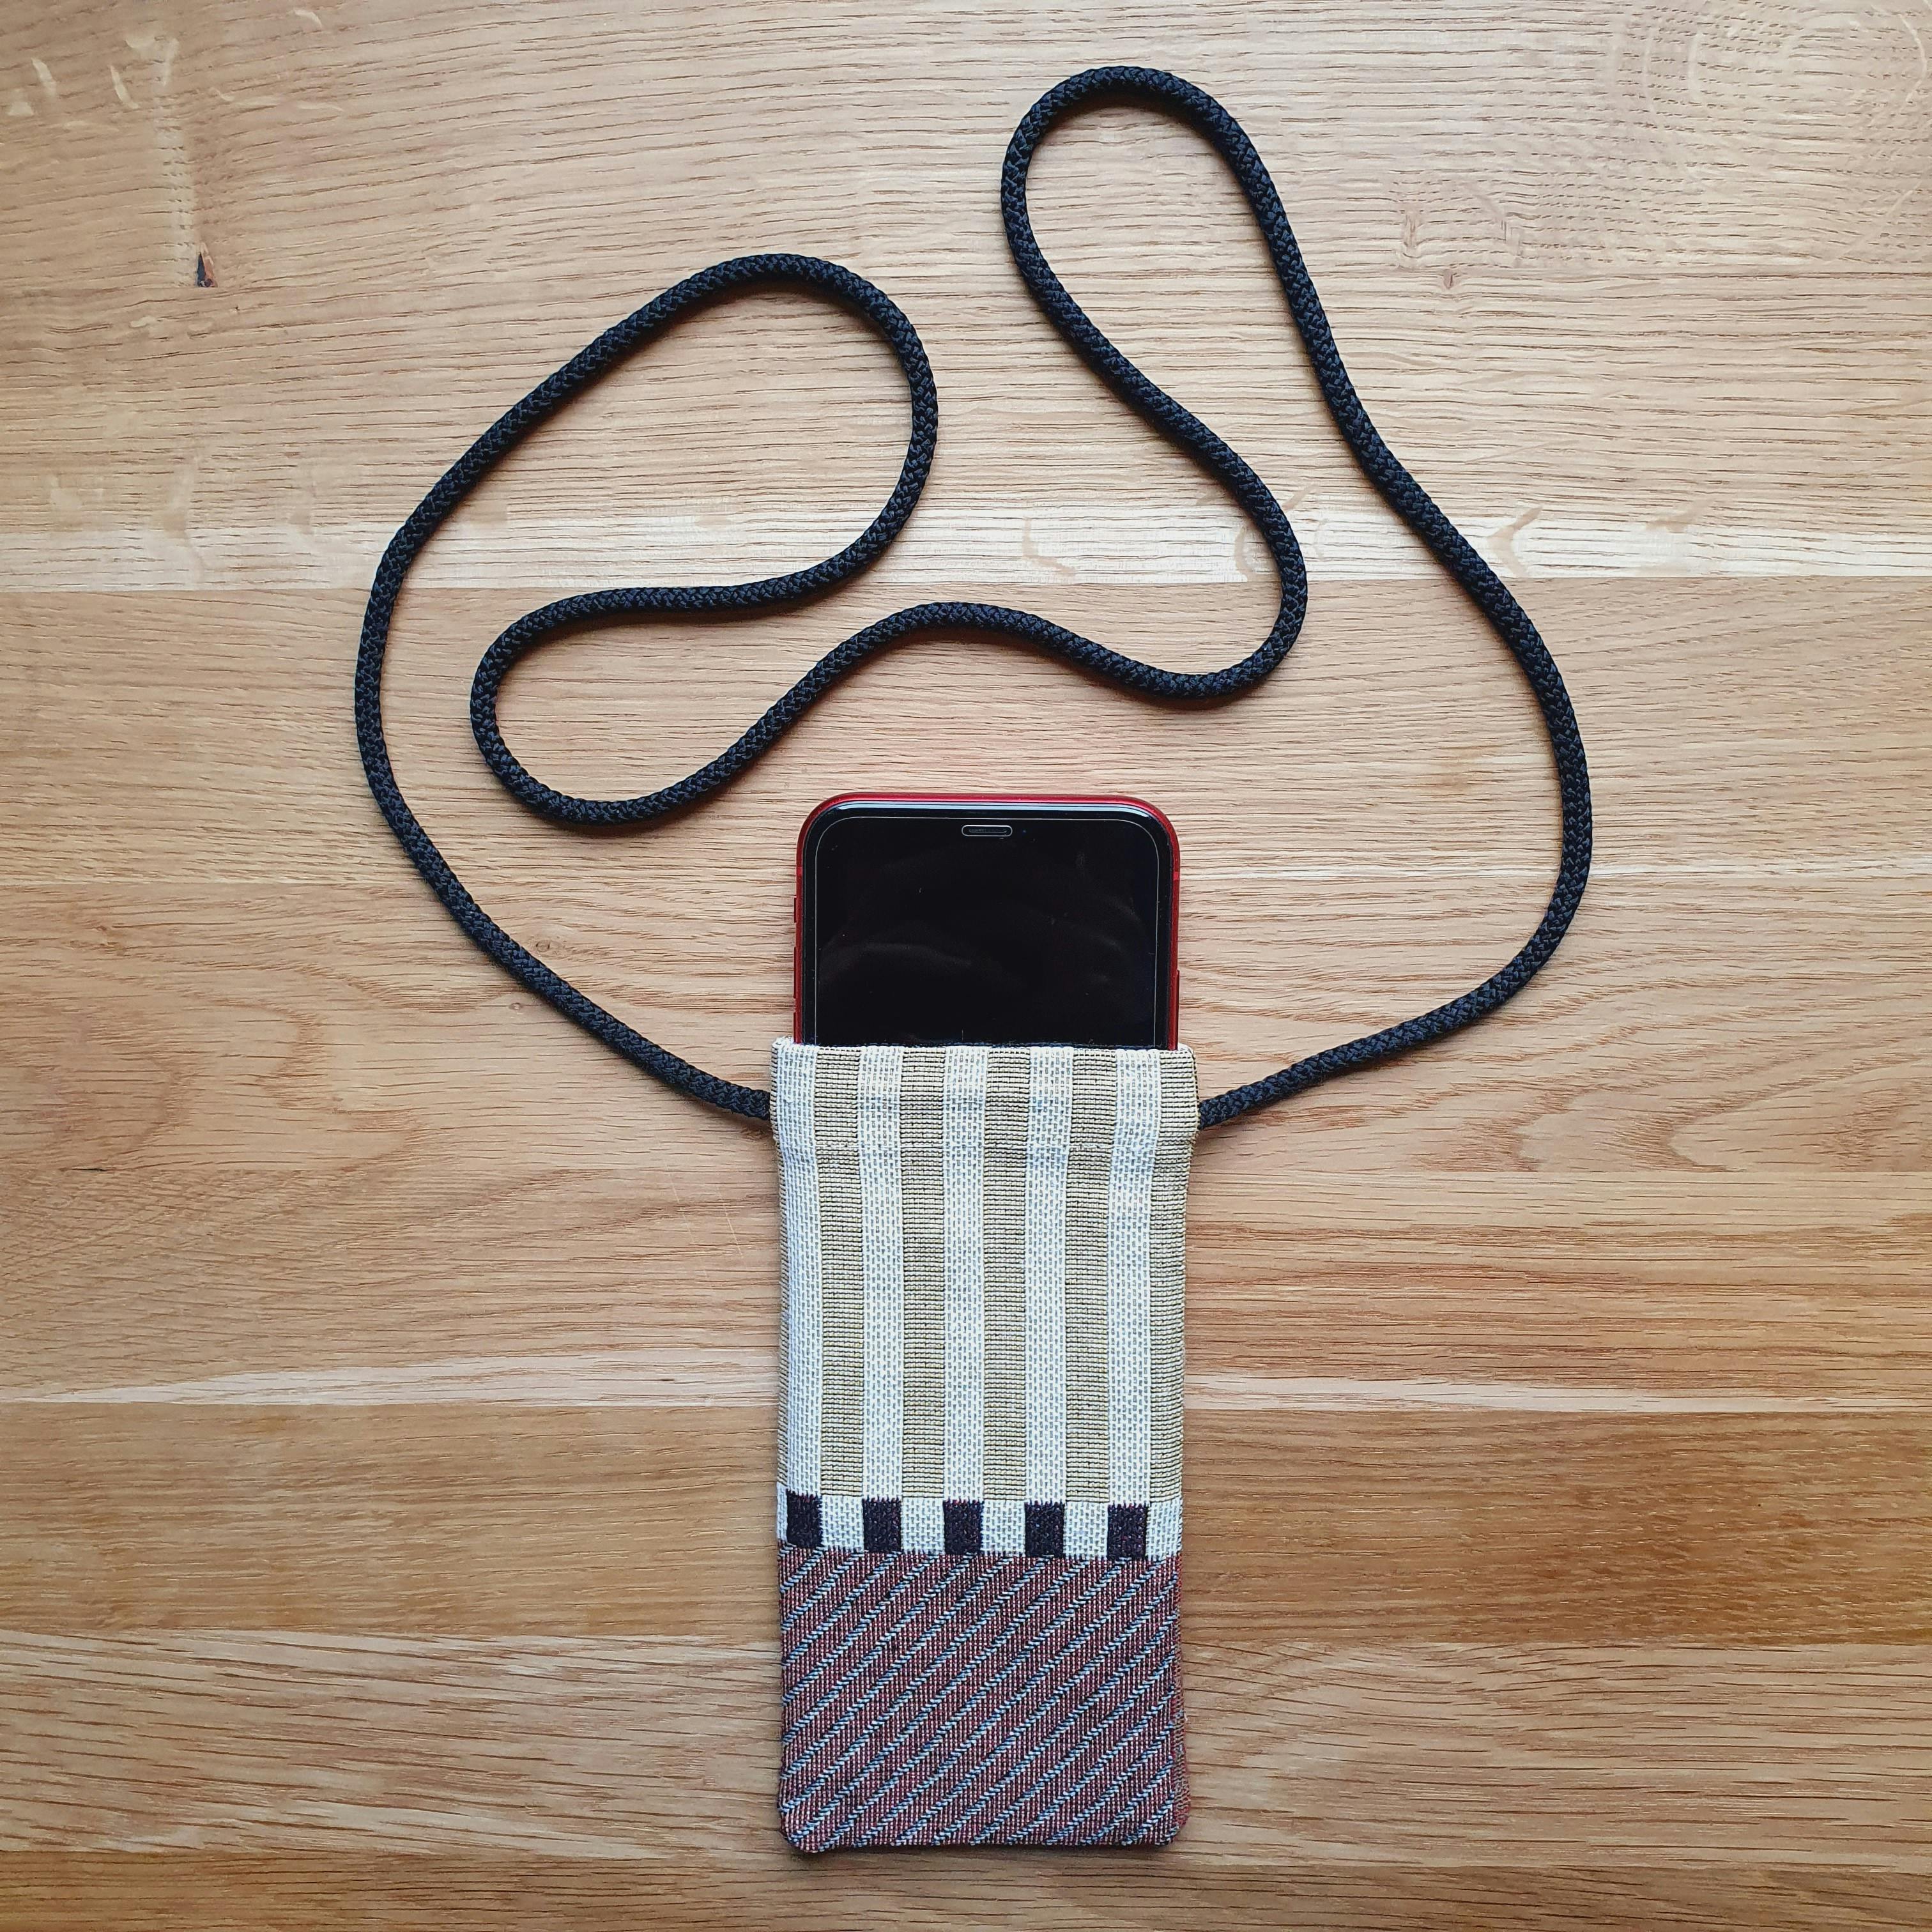  funda para iPhone hecha a mano en tela tejida a rayas con cordón para el cuello y el teléfono guardado en el interior